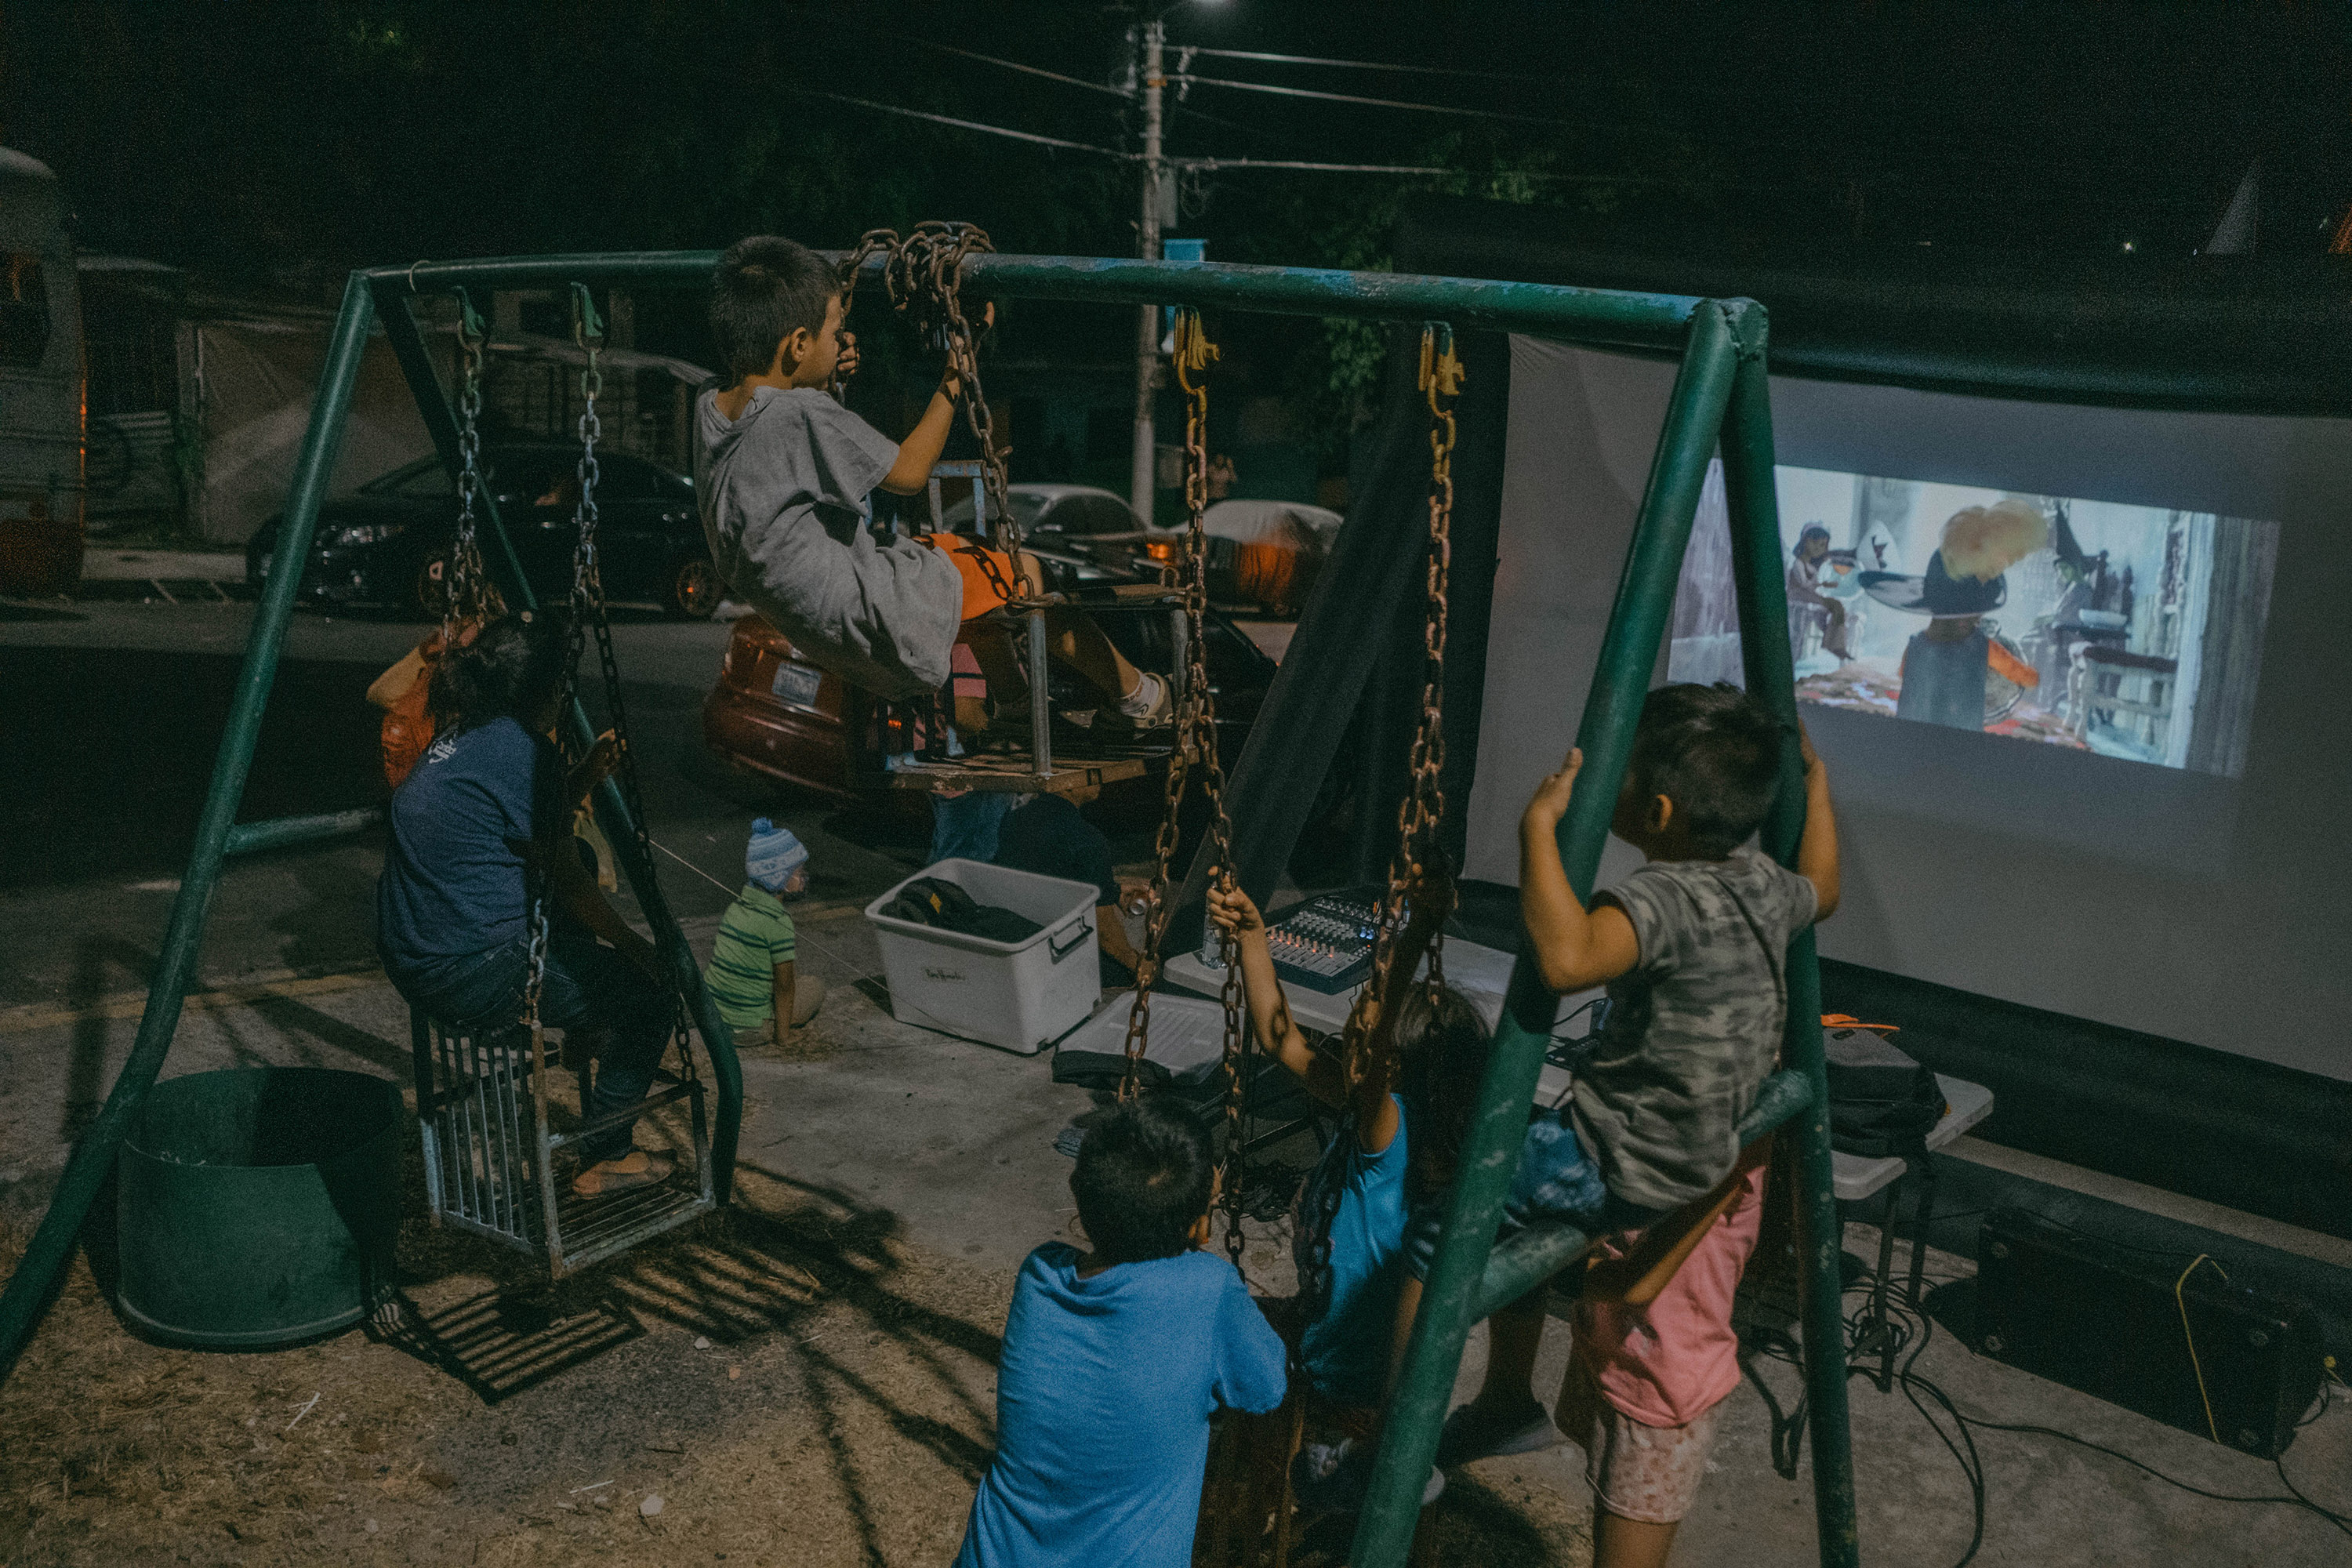 El 20 de febrero de 2023 hubo cine ambulante en La Campanera, la comunidad se organizó y, en conjunto con la Dirección de Reconstrucción de Tejido Social, proyectaron una película para niños. De un lado hubo sillas que fueron llenadas por niños que eran acompañados de sus padres; del otro lado, los niños se colgaron de los viejos columpios para poder ver la película en la calle principal de la colonia.